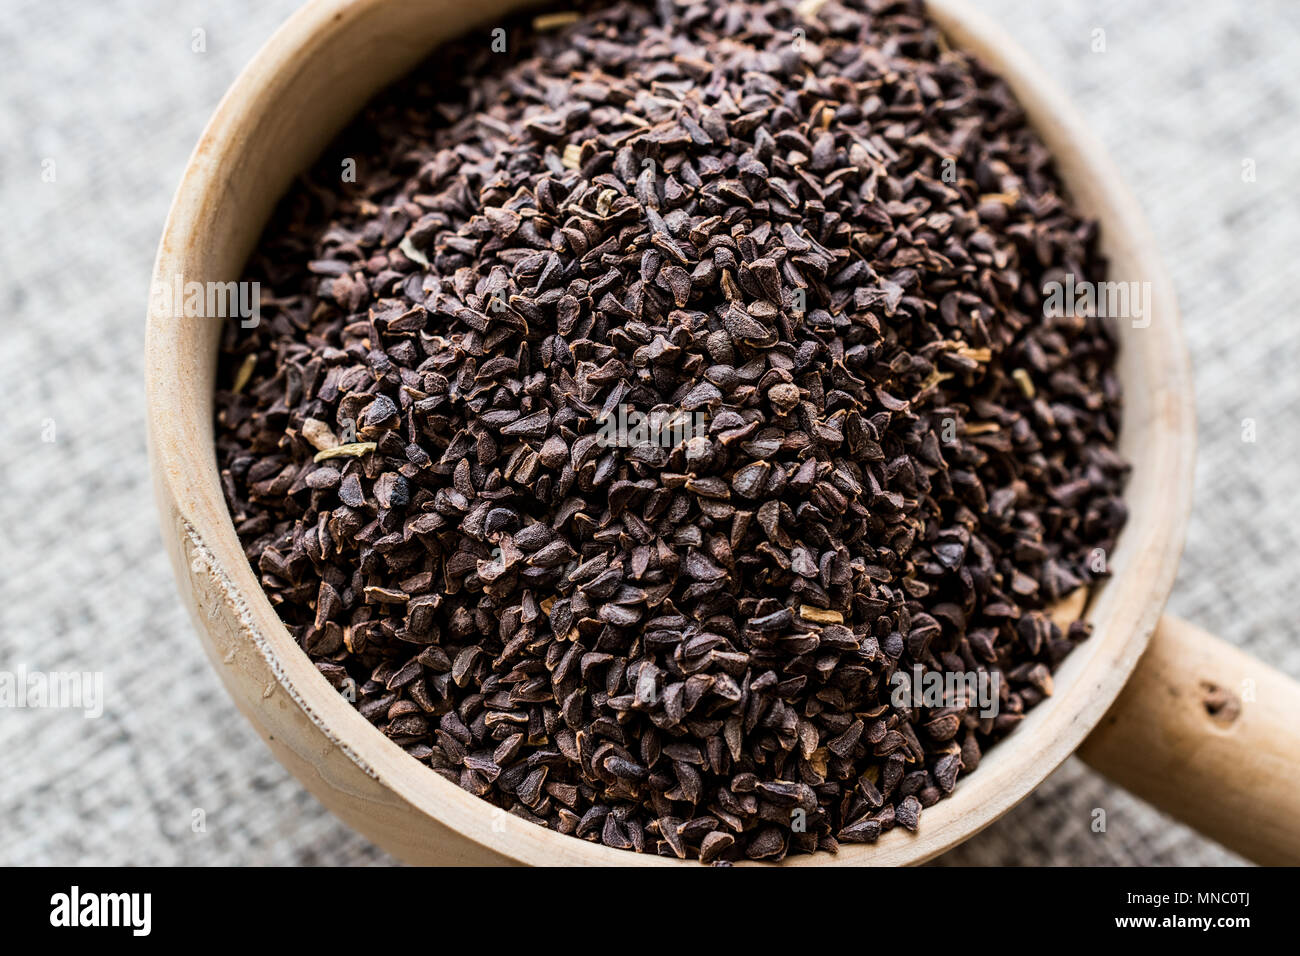 Harmal seed or Peganum harmala / uzerlik otu / Erowid Syrian Rue. Organic Concept. Stock Photo